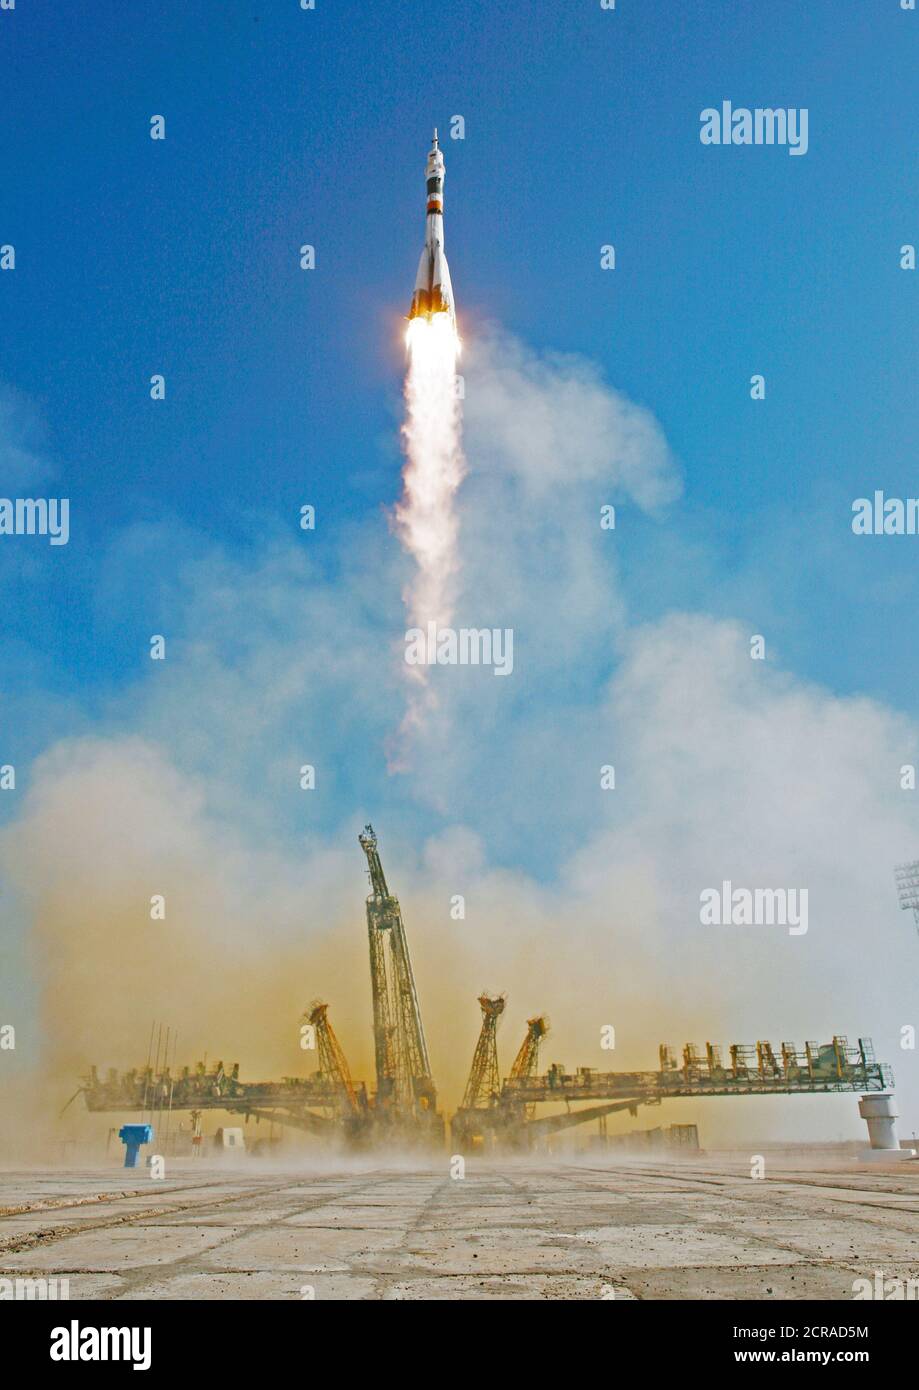 Los lanzamientos Soyuz TMA-16 desde el cosmódromo de Baikonur en Kazajstán el miércoles, 30 de septiembre de 2009, llevando Expedition 21 El ingeniero de vuelo Jeffrey N. Williams, el ingeniero de vuelo Maxim Suraev y Guy Laliberté participante de Vuelos Espaciales a la Estación Espacial Internacional. (Crédito de la imagen: NASA/Bill Ingalls) Foto de stock